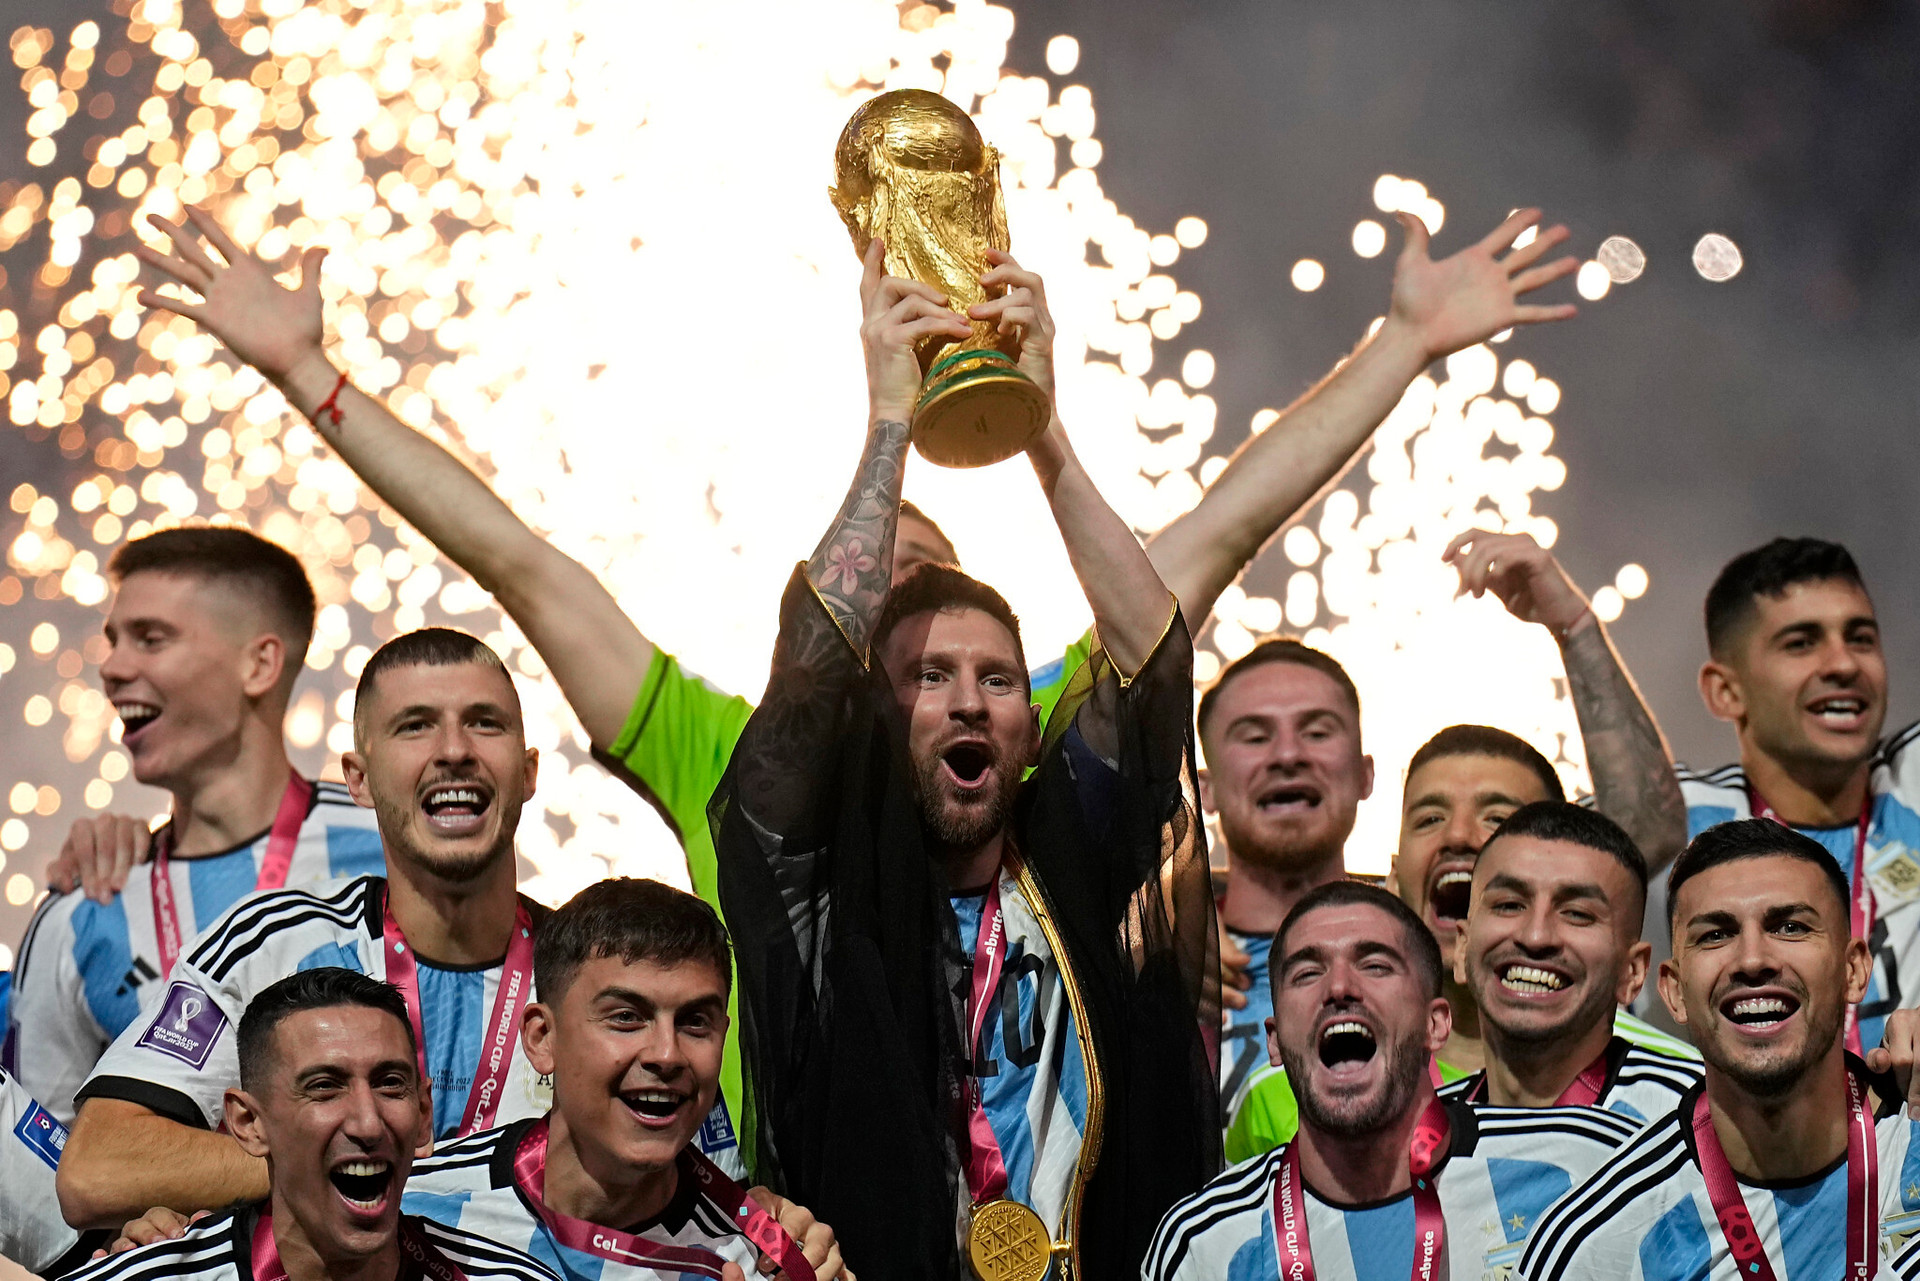 Chiếc Cúp vàng World Cup đã từng là niềm mơ ước của Messi và đã trở thành hiện thực. Hình ảnh Messi ôm trọn Cúp vàng đầy hào hứng và cảm xúc sẽ khiến bạn bị cuốn hút ở từng chi tiết. Hãy cùng xem lại khoảnh khắc vĩ đại đó qua bức ảnh đáng nhớ này.